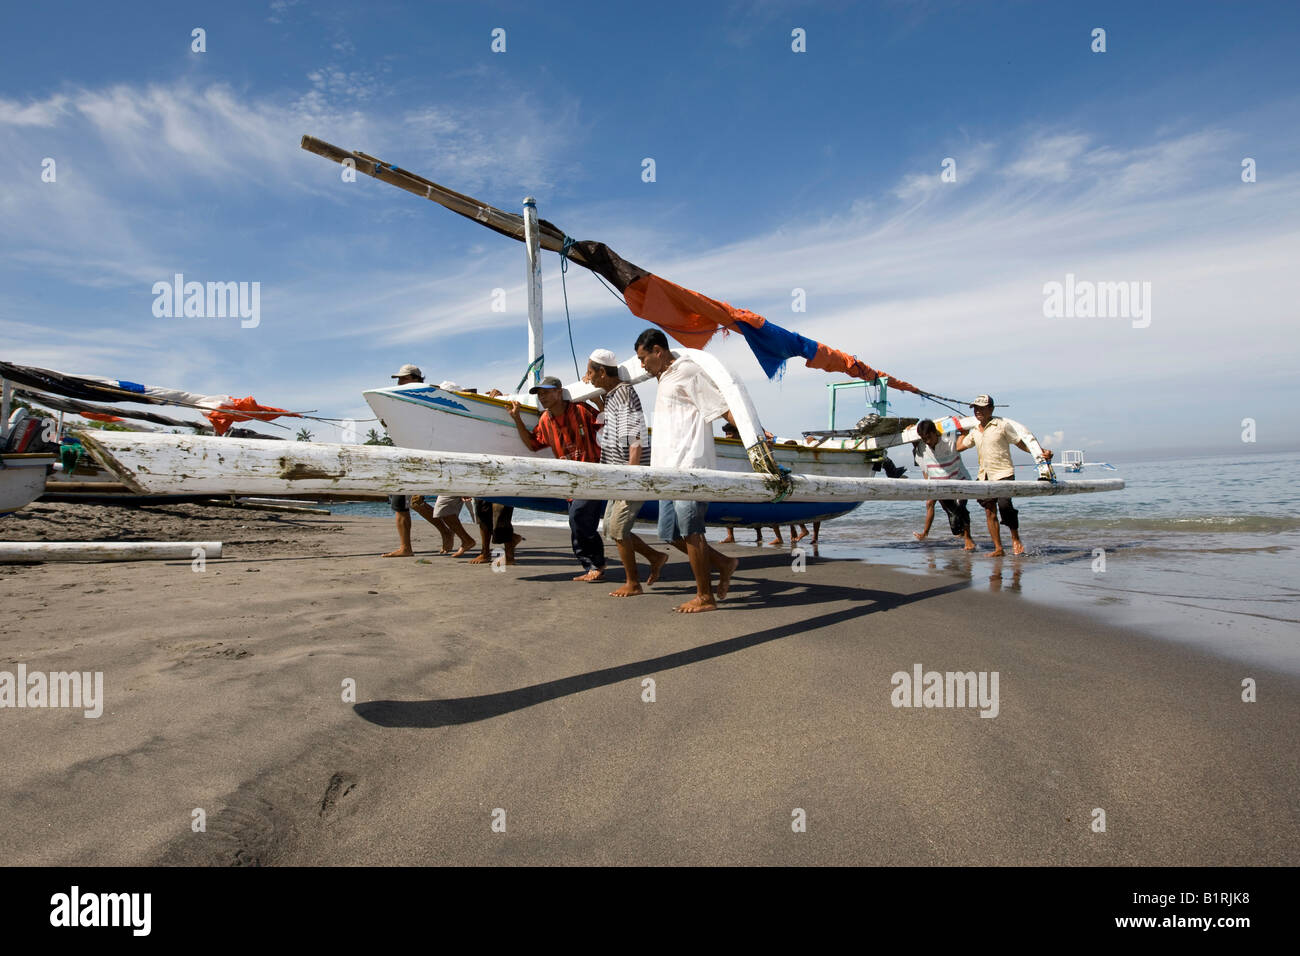 La pêche aux tangons revenant d'amorçage et la pêche en cours vers la plage par les pêcheurs, Senggigi, île de Lombok, moindre Sund Banque D'Images